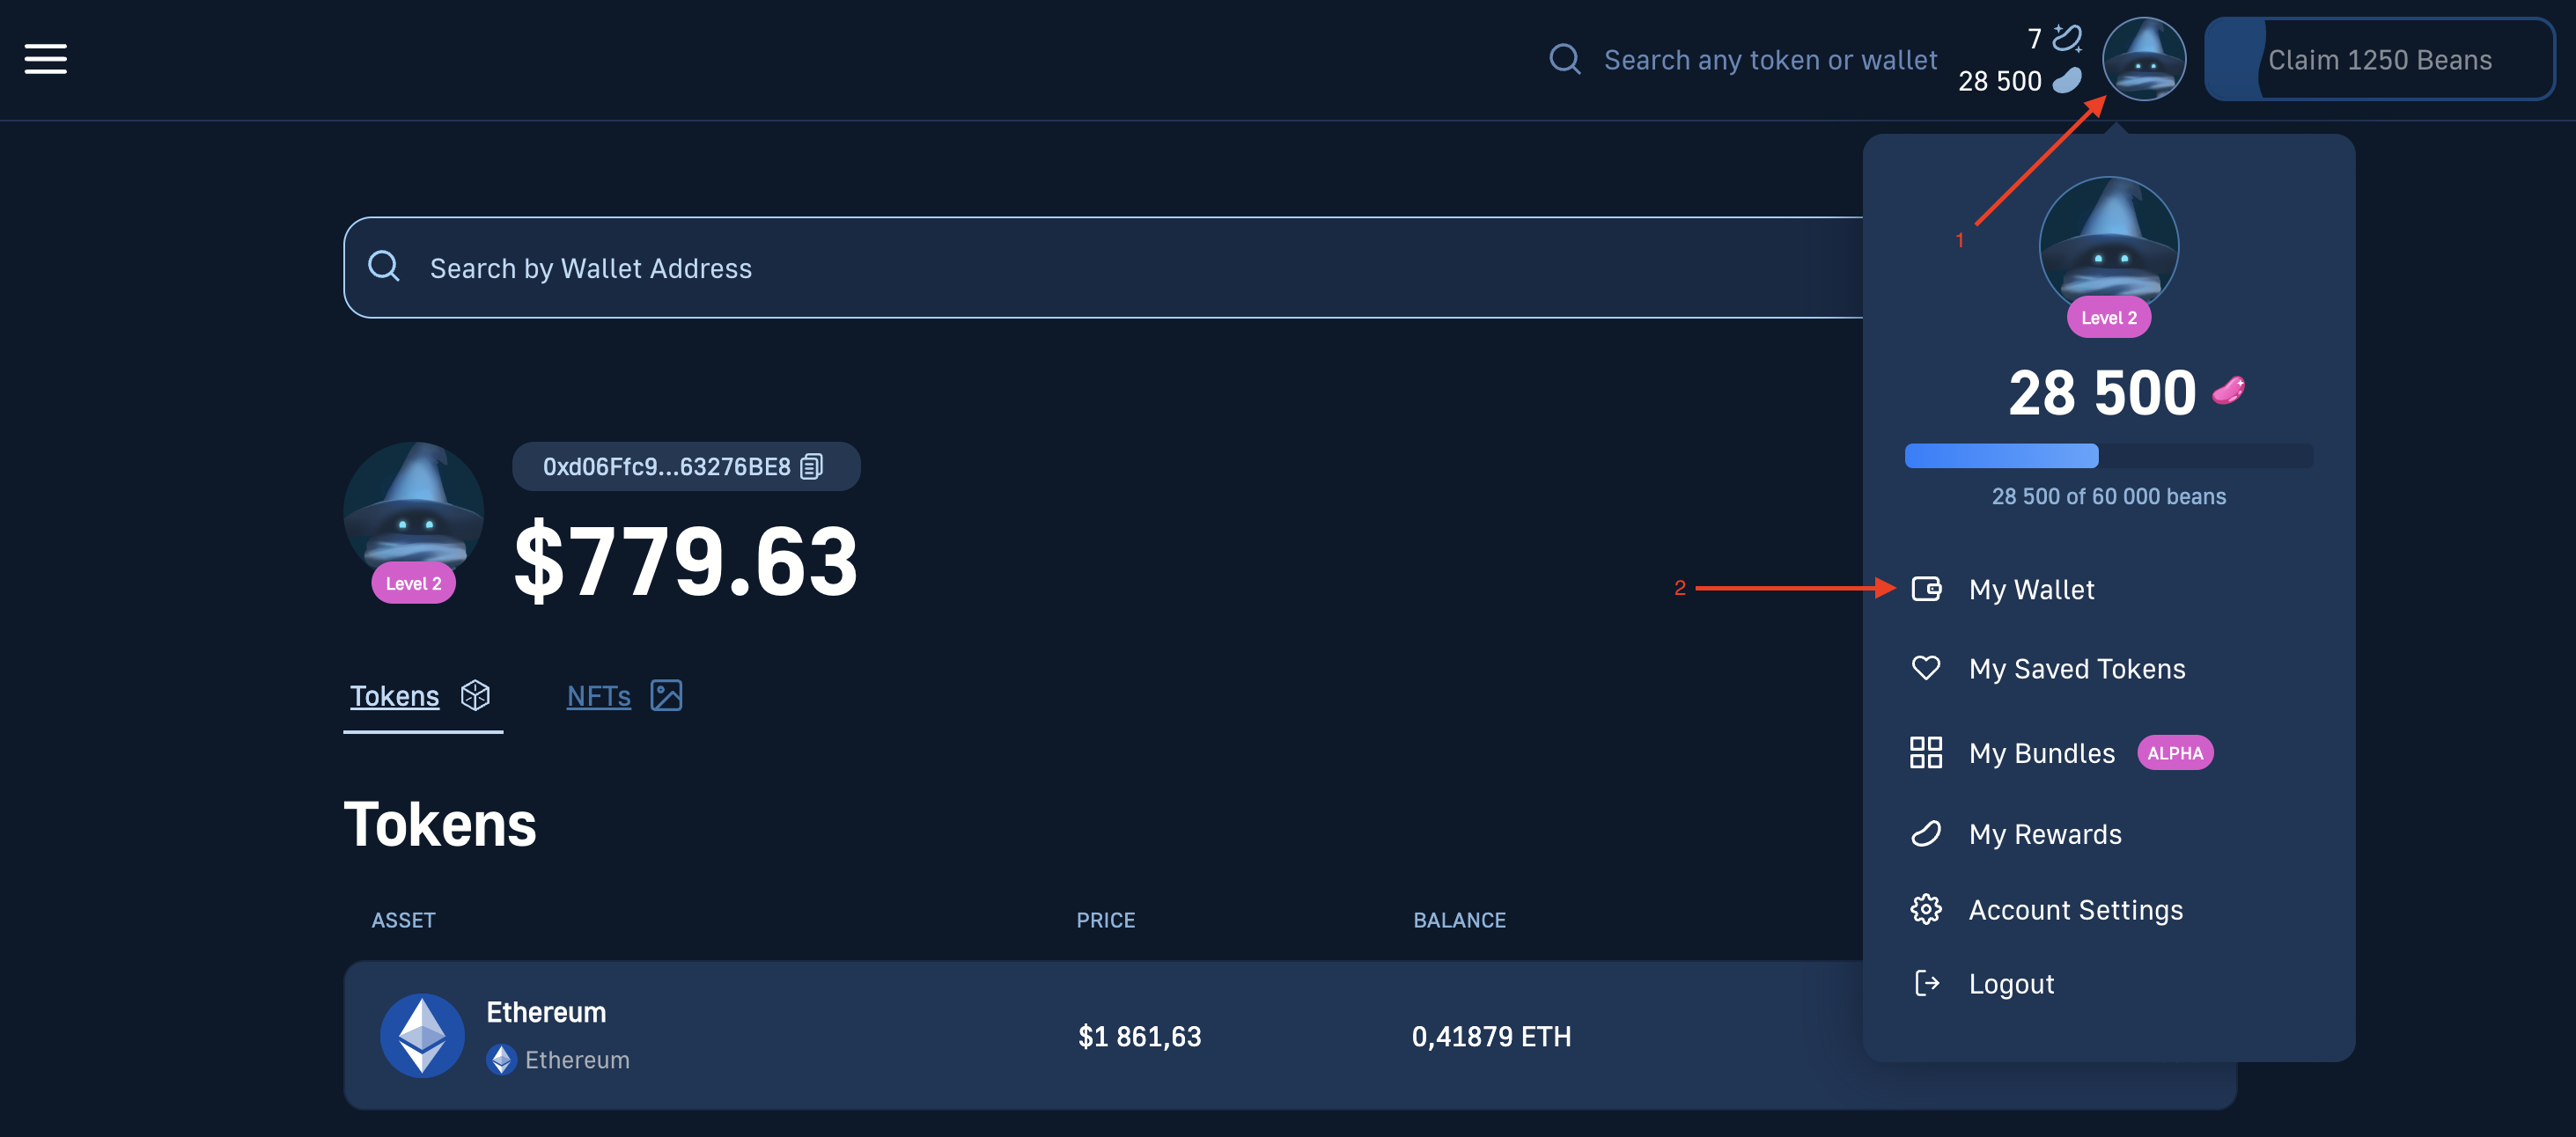 UI of Moralis Money's token portfolio tracker